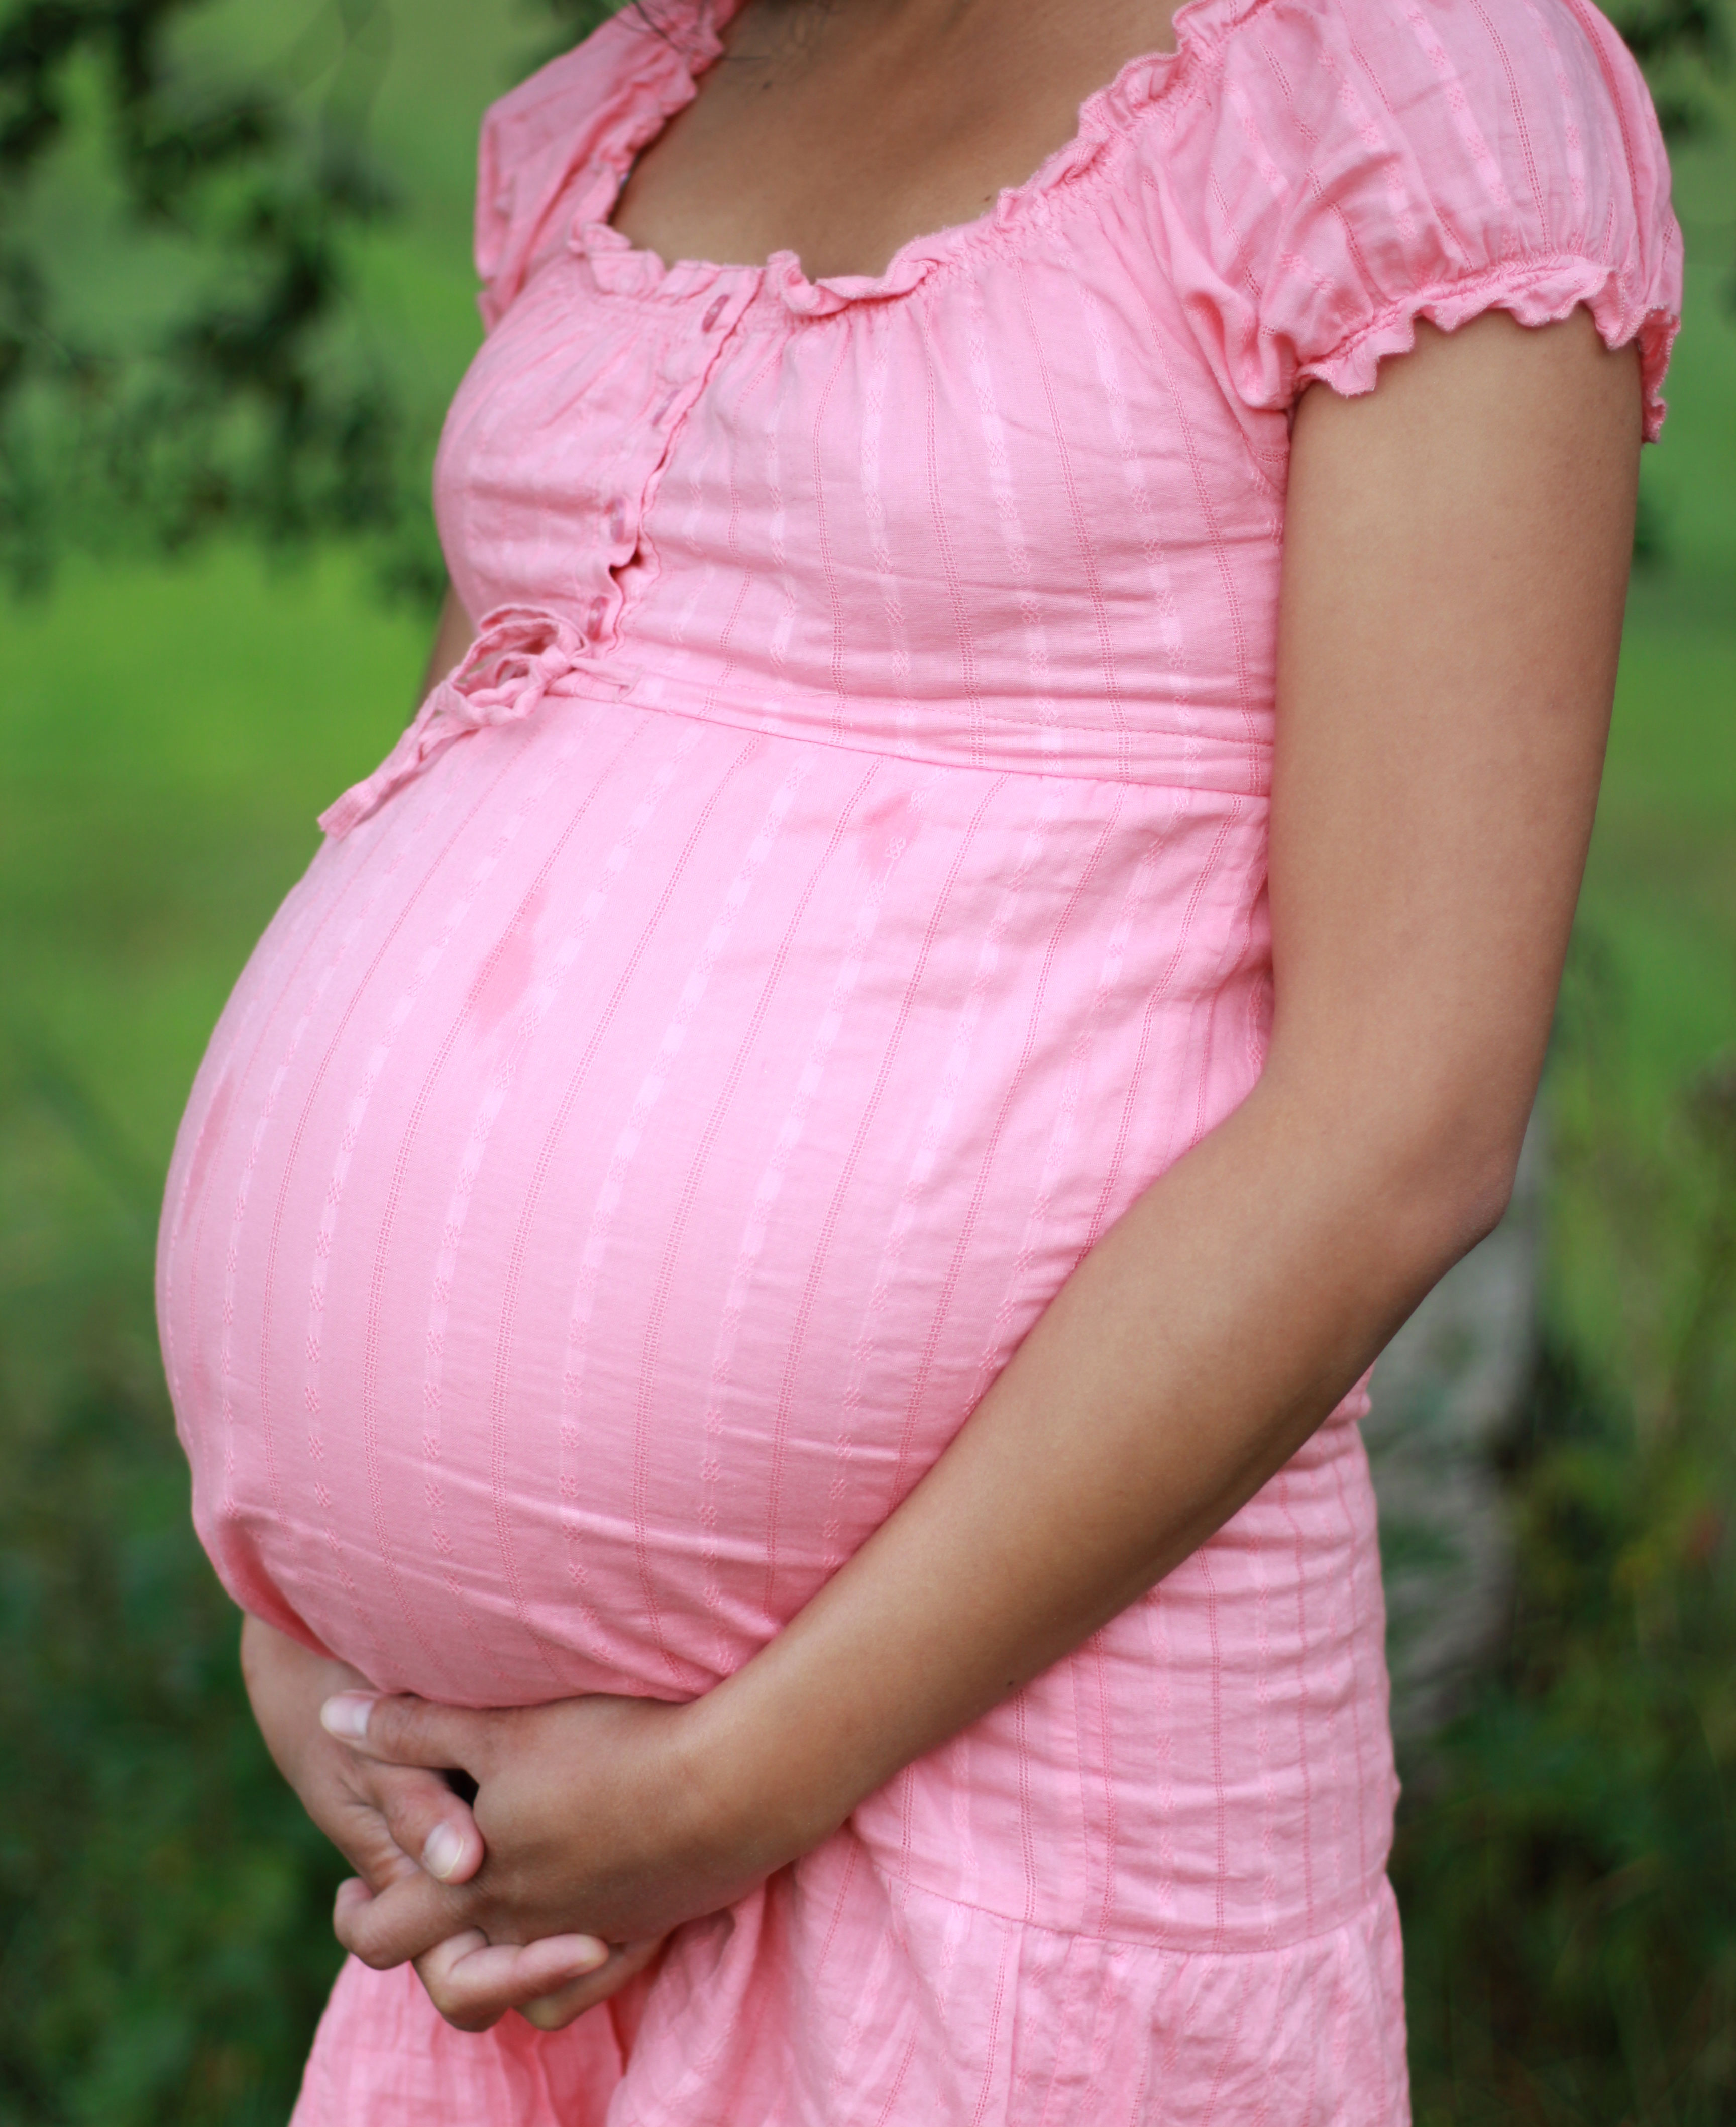 Behörde Warnt Schwangere Vor Reisen Nach Miami Infektionen Derstandard At › Gesundheit